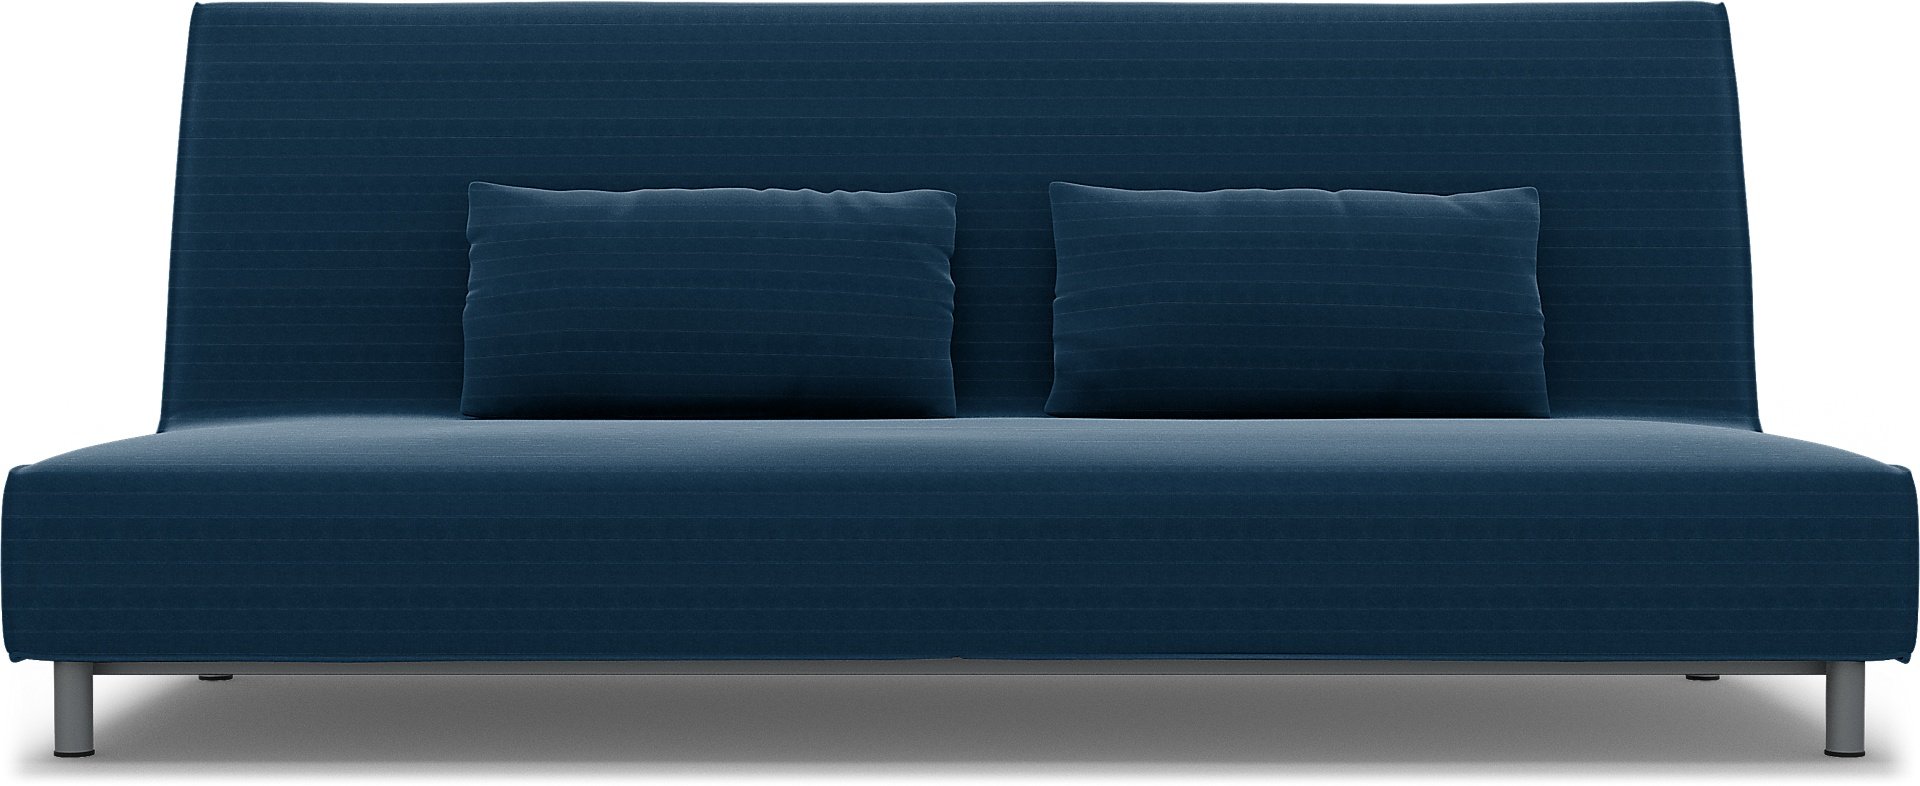 IKEA - Beddinge Sofa Bed Cover, Denim Blue, Velvet - Bemz